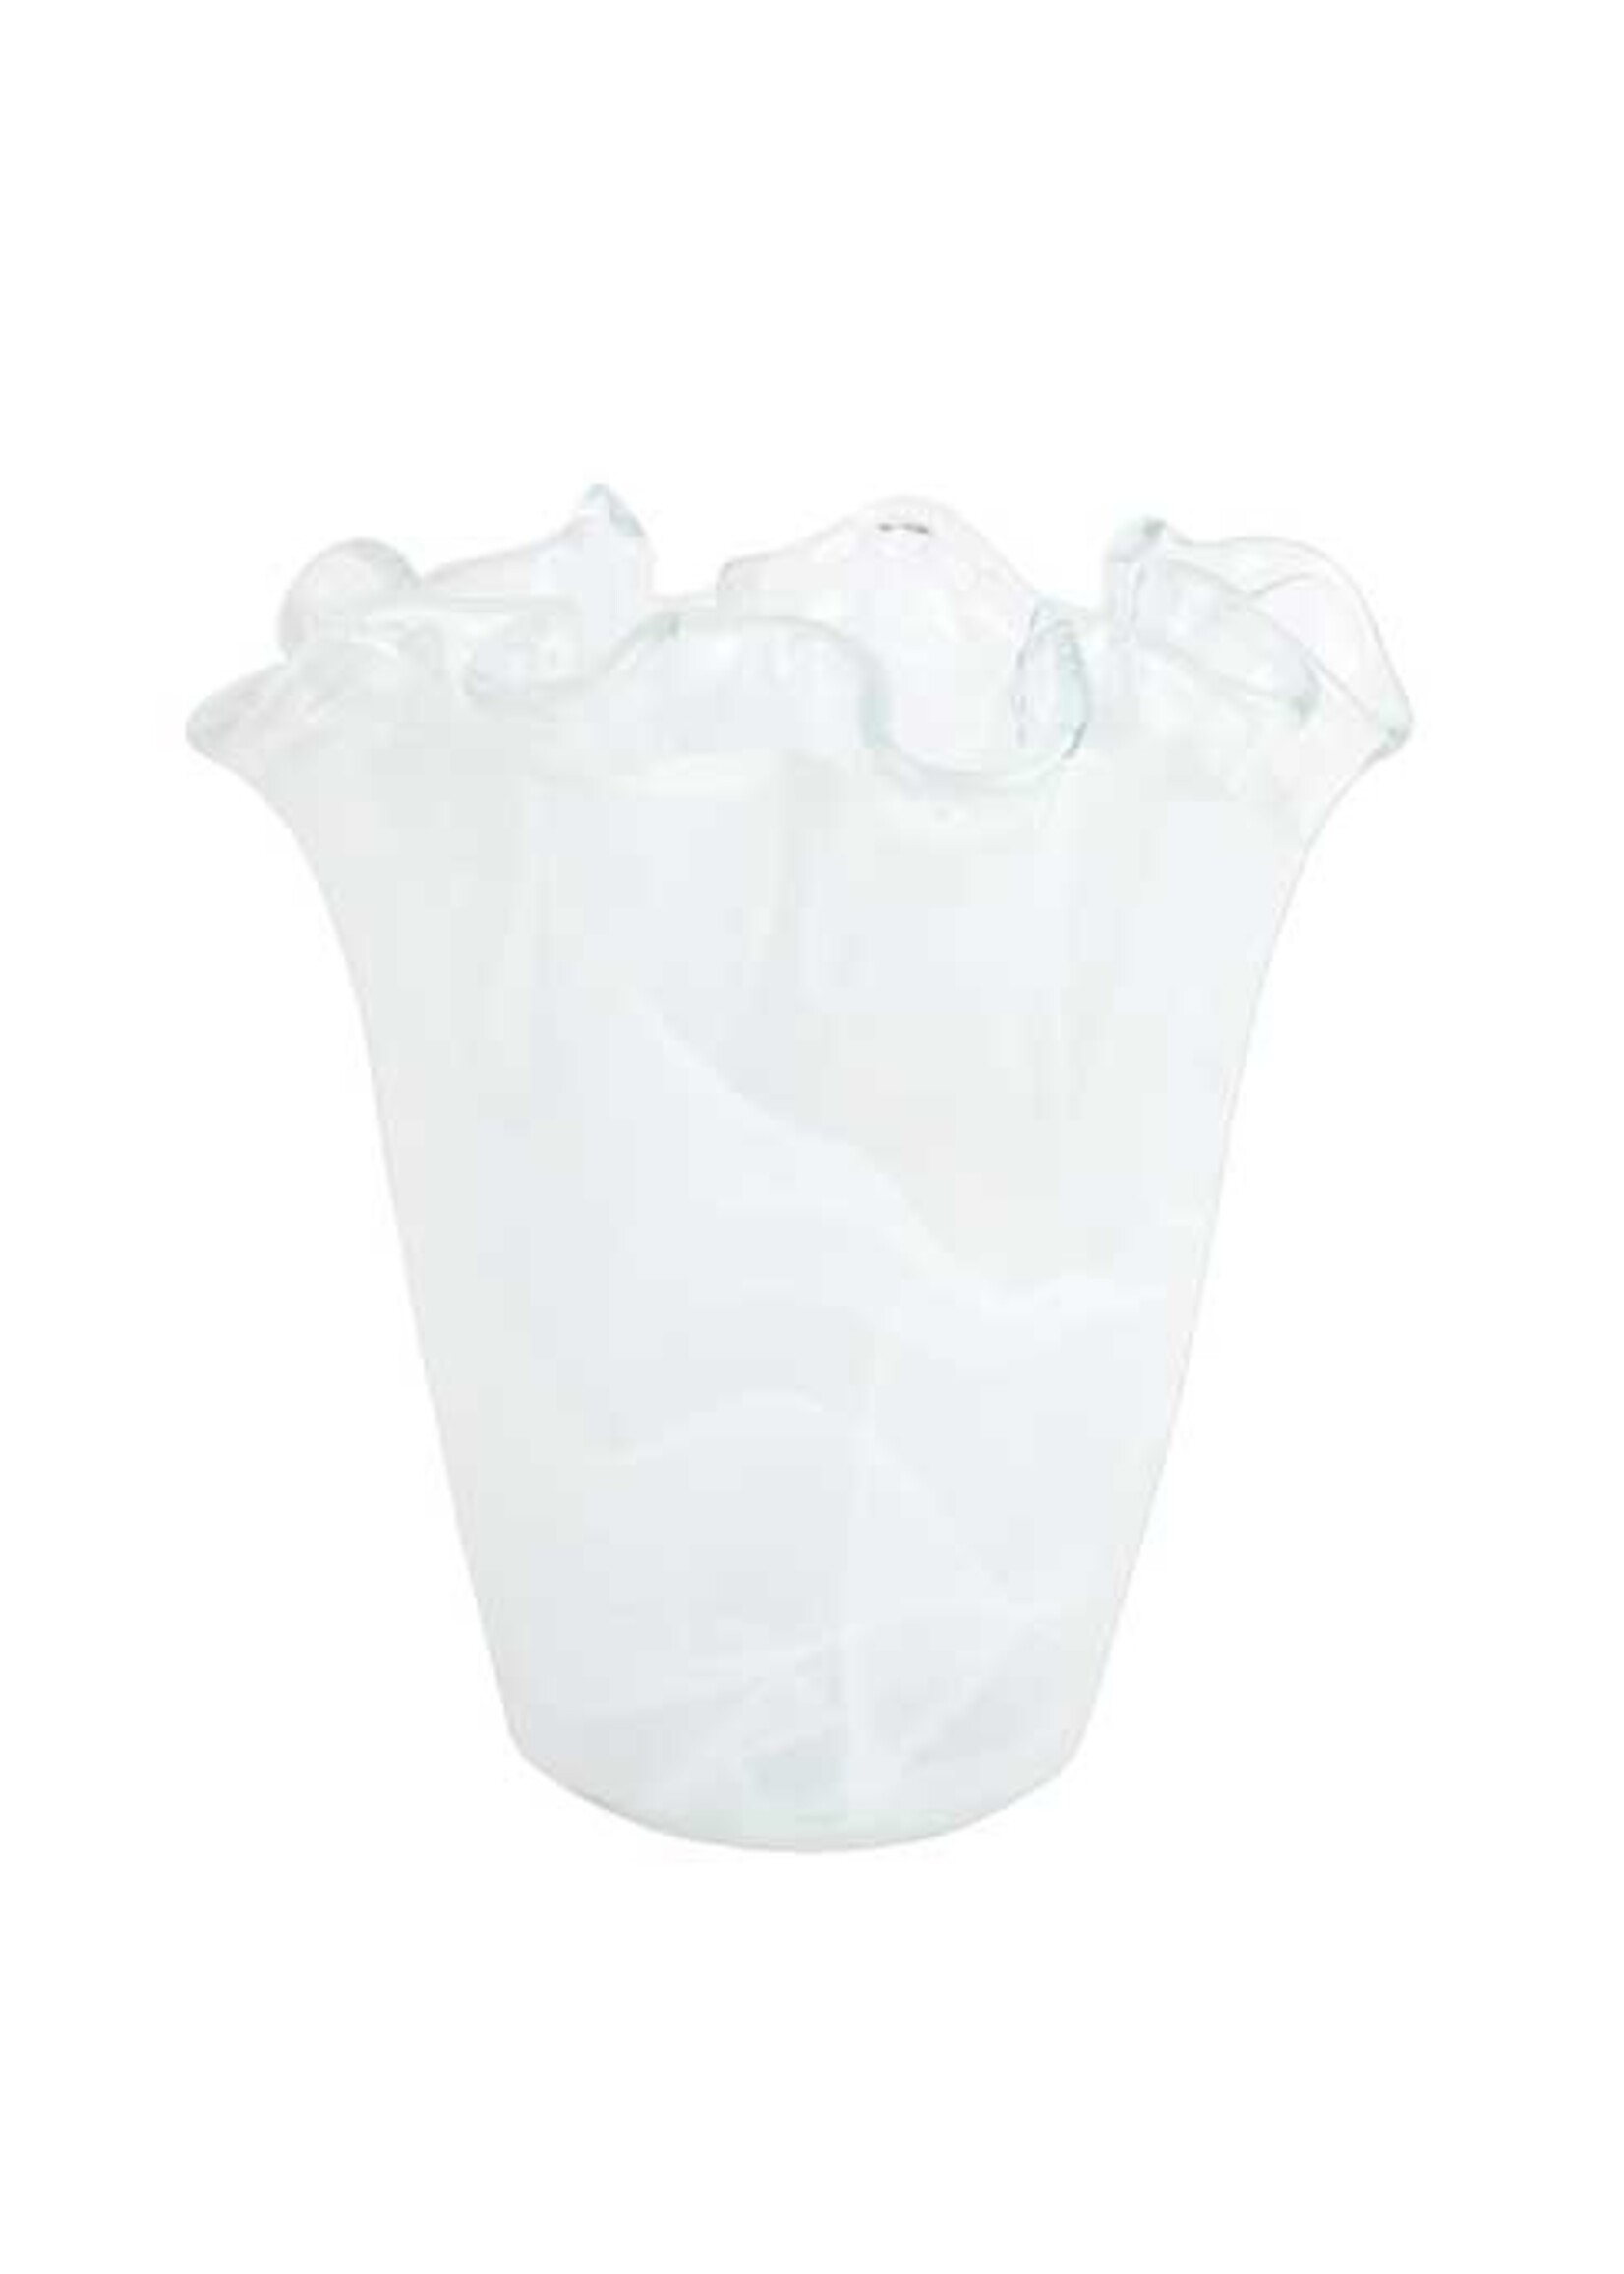 VIETRI Onda Glass White Ruffled Vase